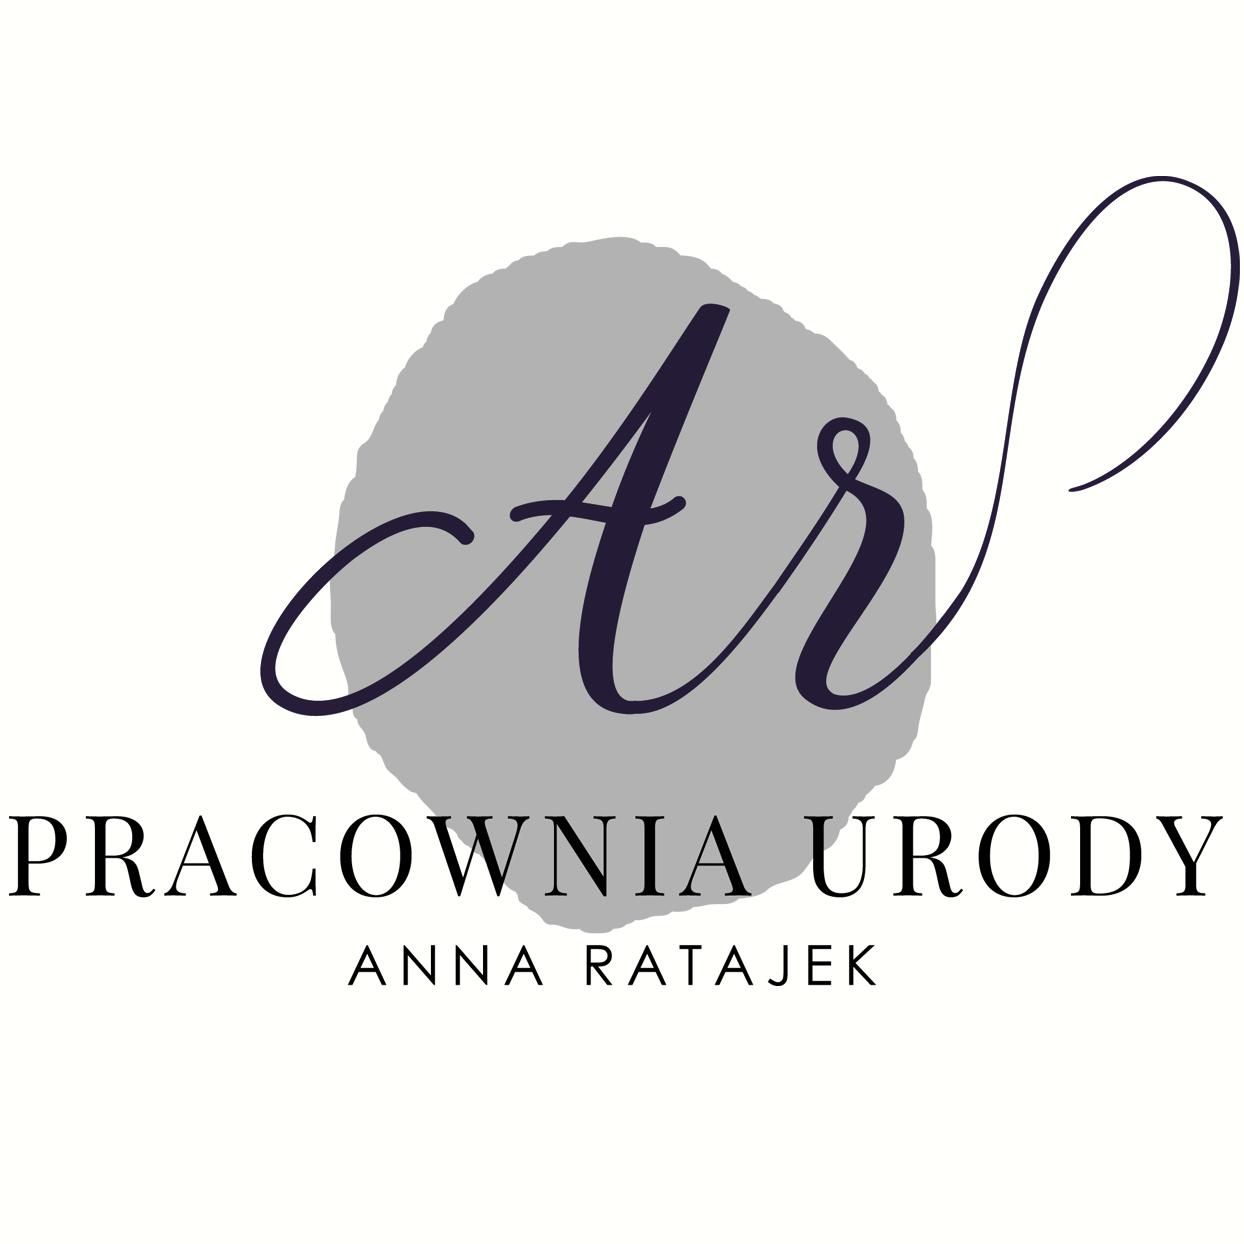 Pracownia Urody Anna Ratajek, Żeromskiego 62, 50-312, Wrocław, Śródmieście